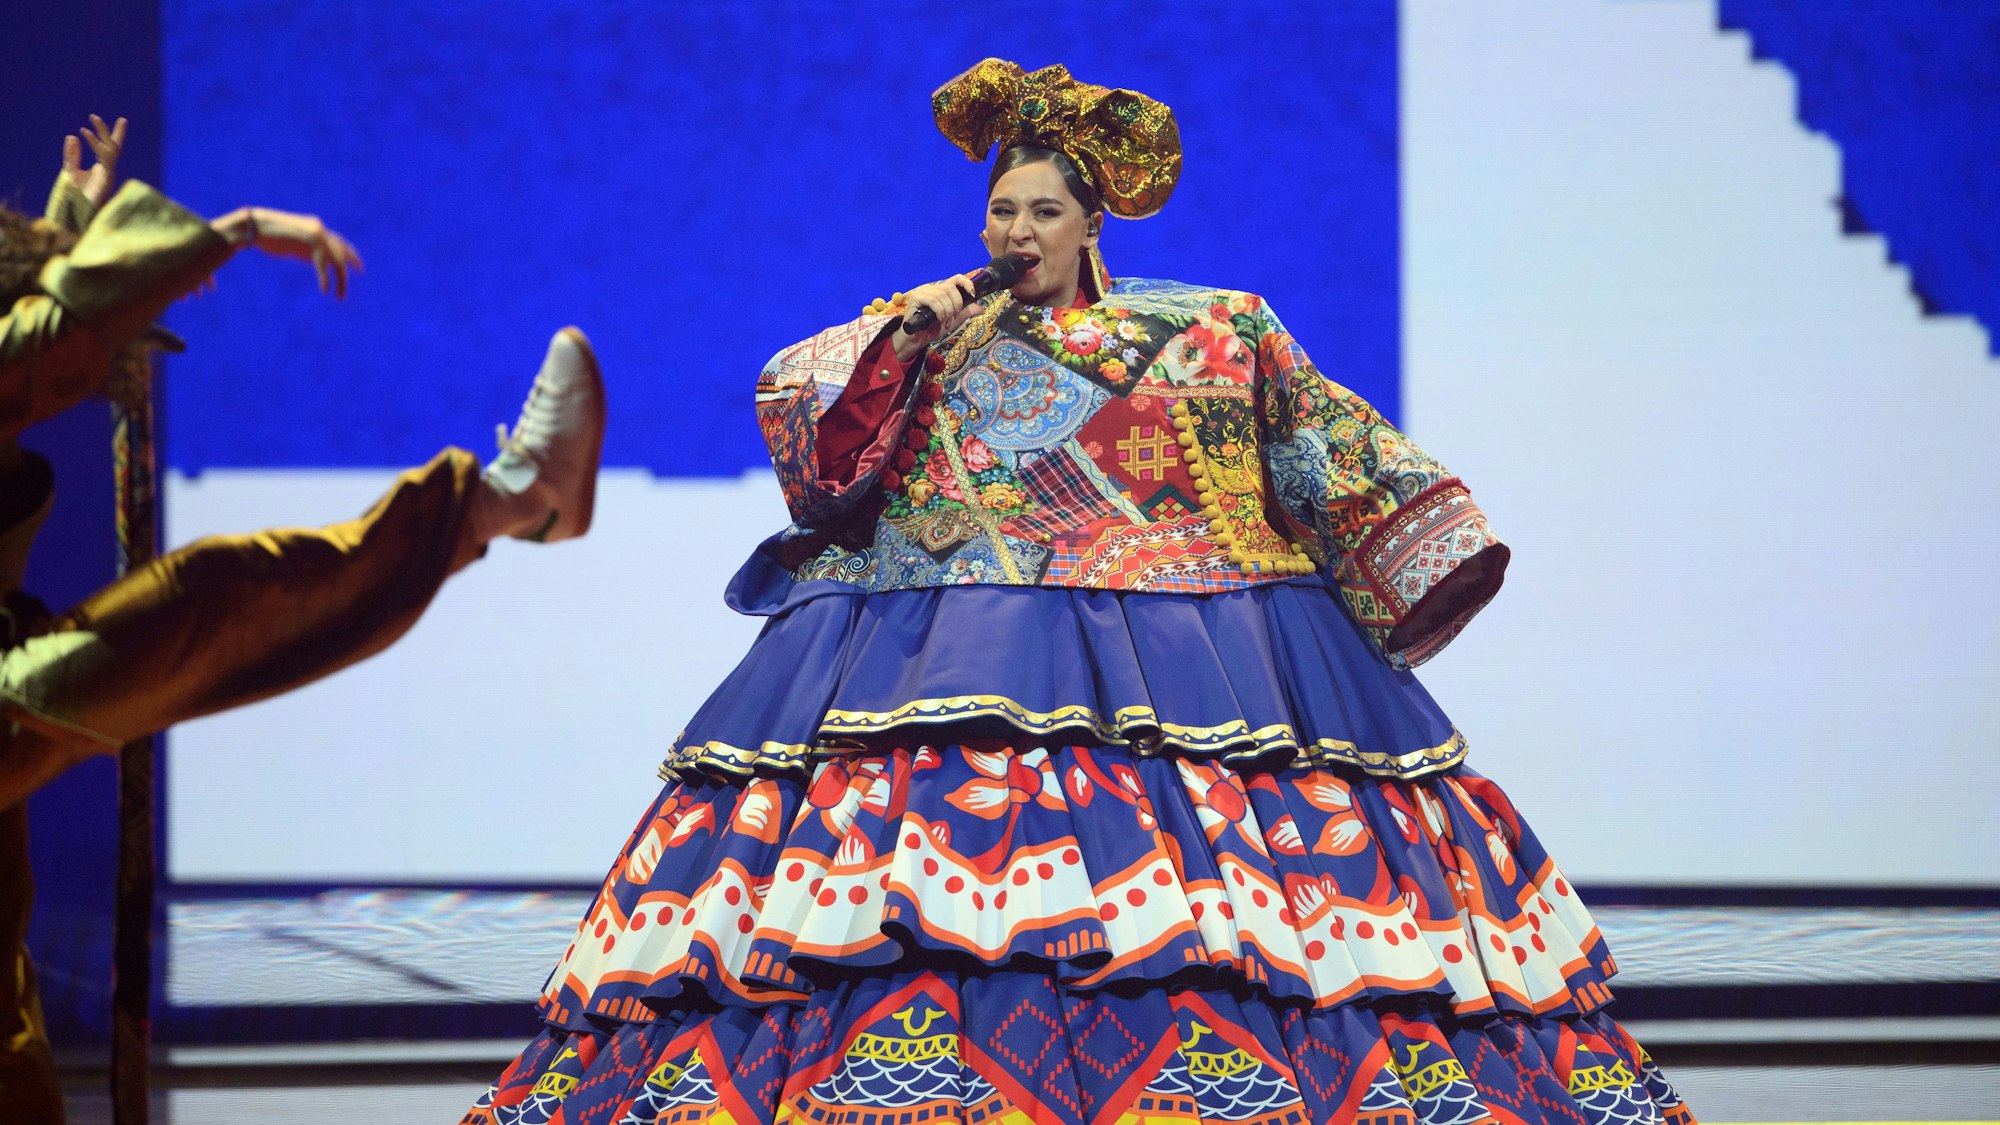 Manizha (Russland) mit einem riesigen Kleid auf der Bühne.